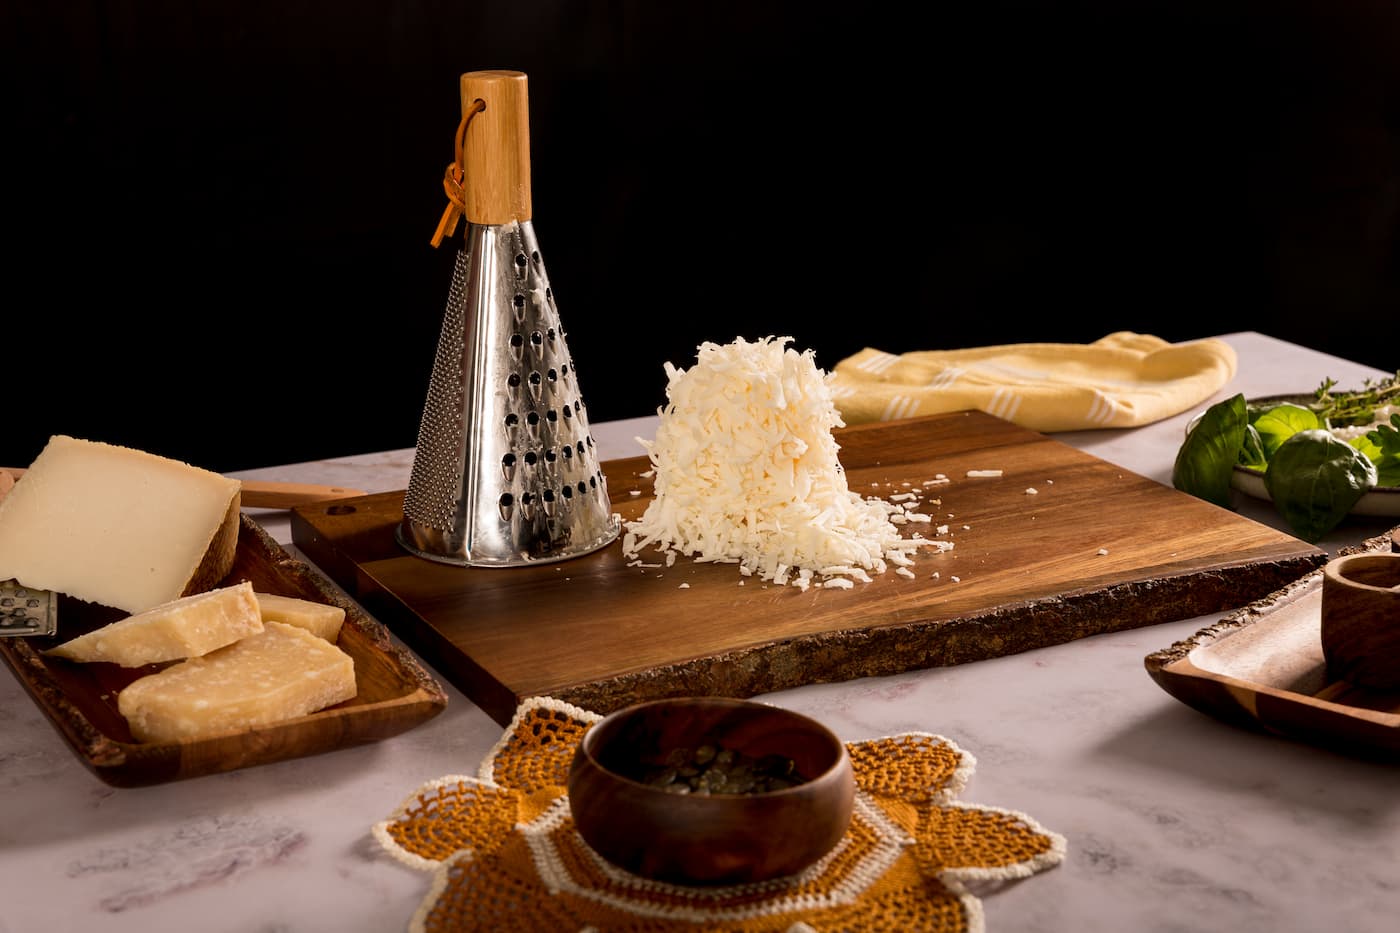 Receta Ravioli de Calabaza y Toque de Mantequilla con salsa tres quesos. Paso 2: rayamos el queso manchego